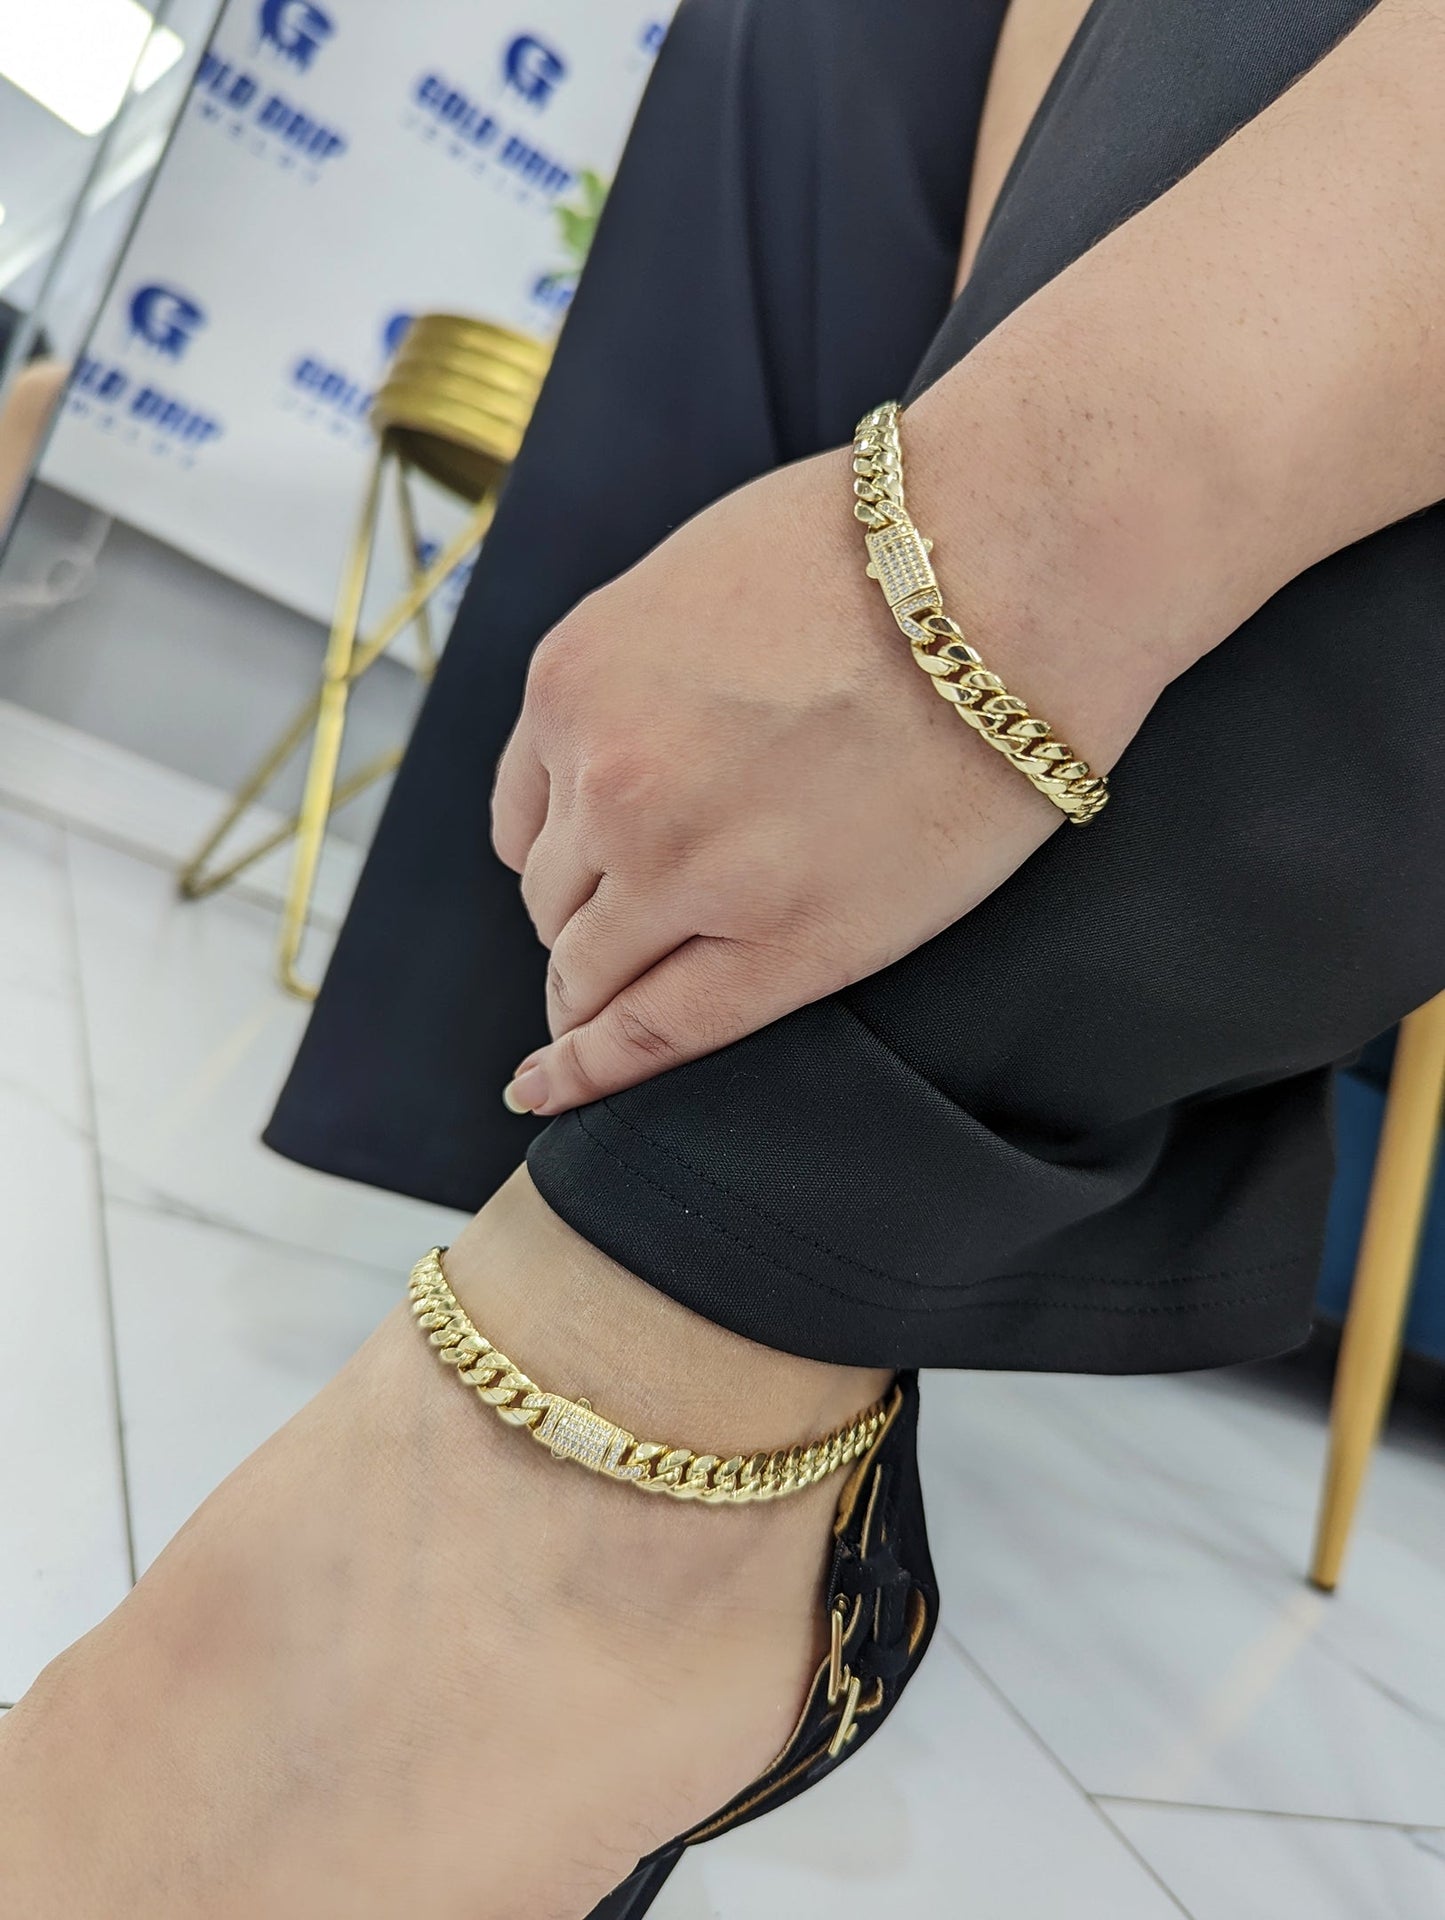 14k bracelet set (ankle and hand)